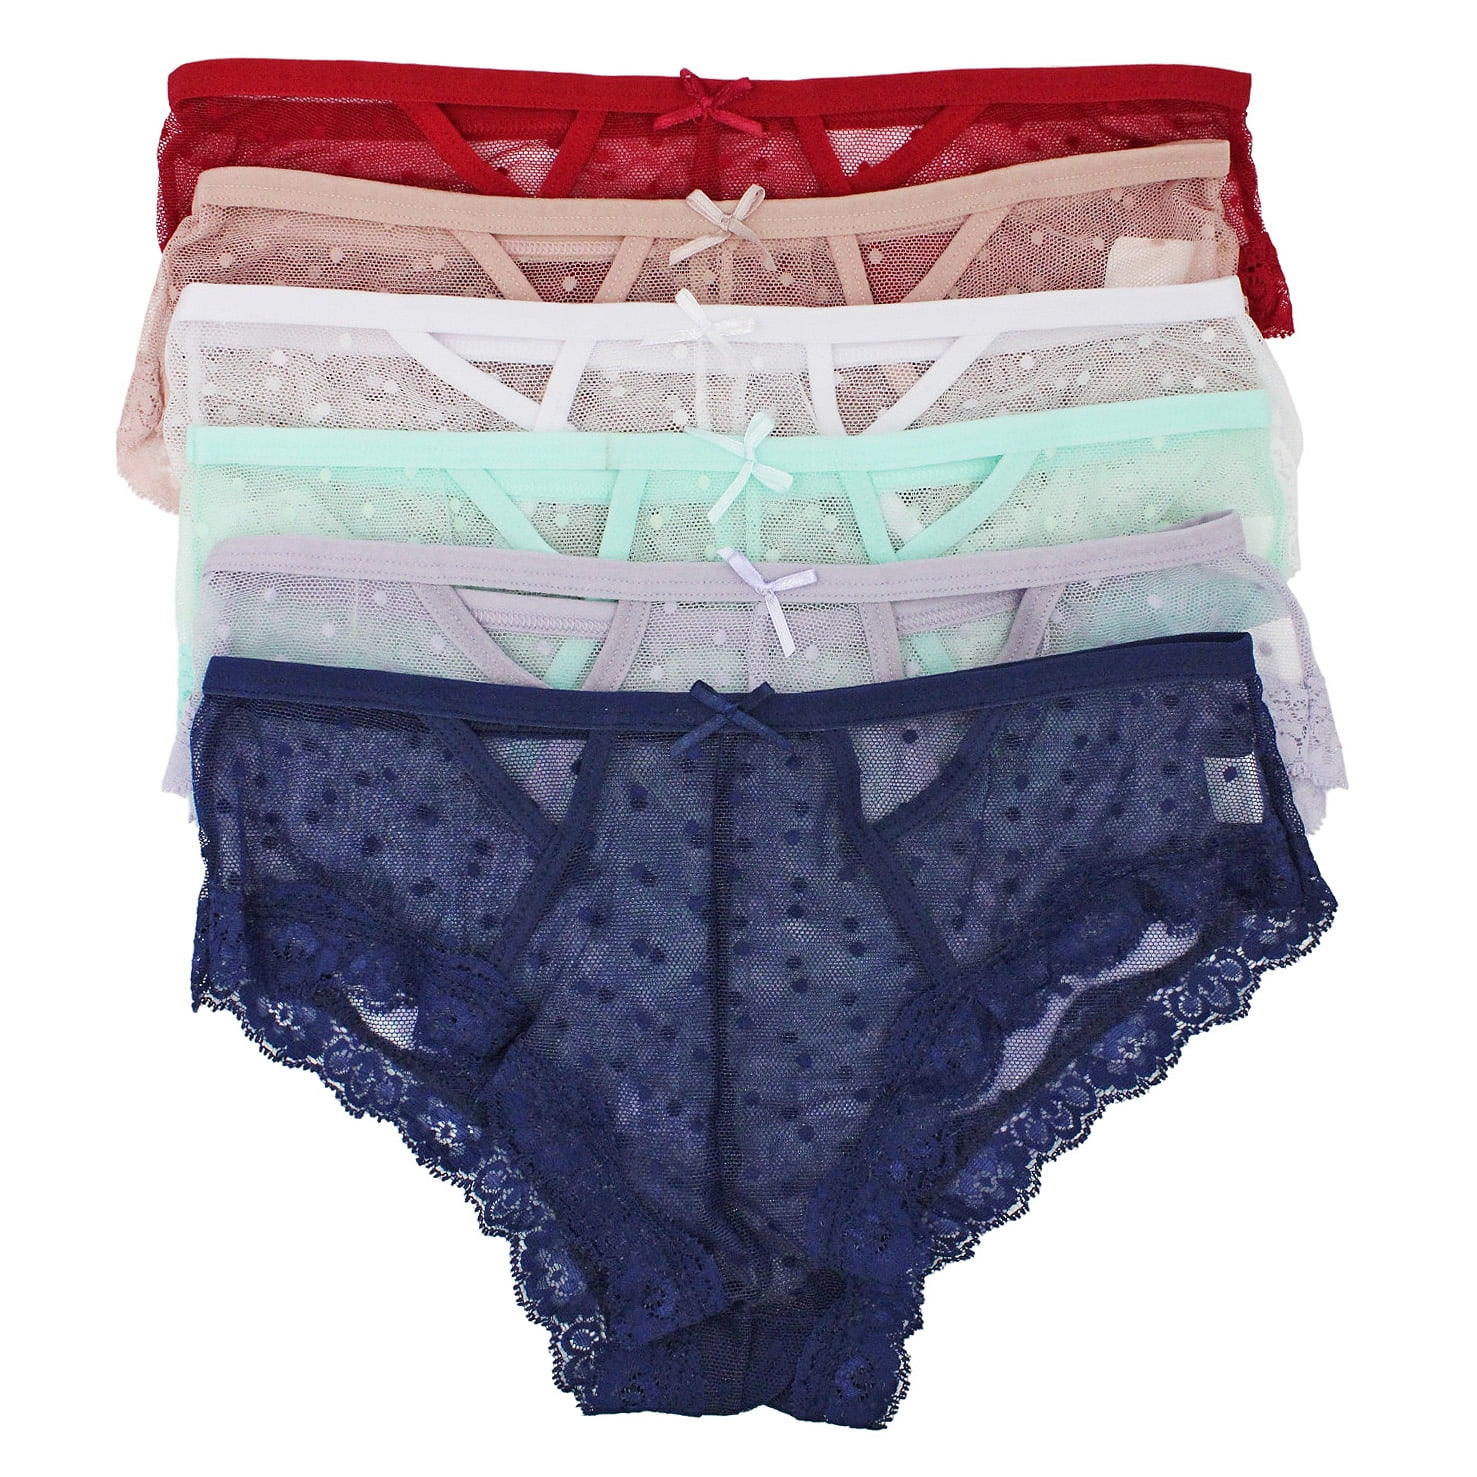 12 Pack Womens Lace Boyshorts Bikini Panties Sexy Boy Shorts